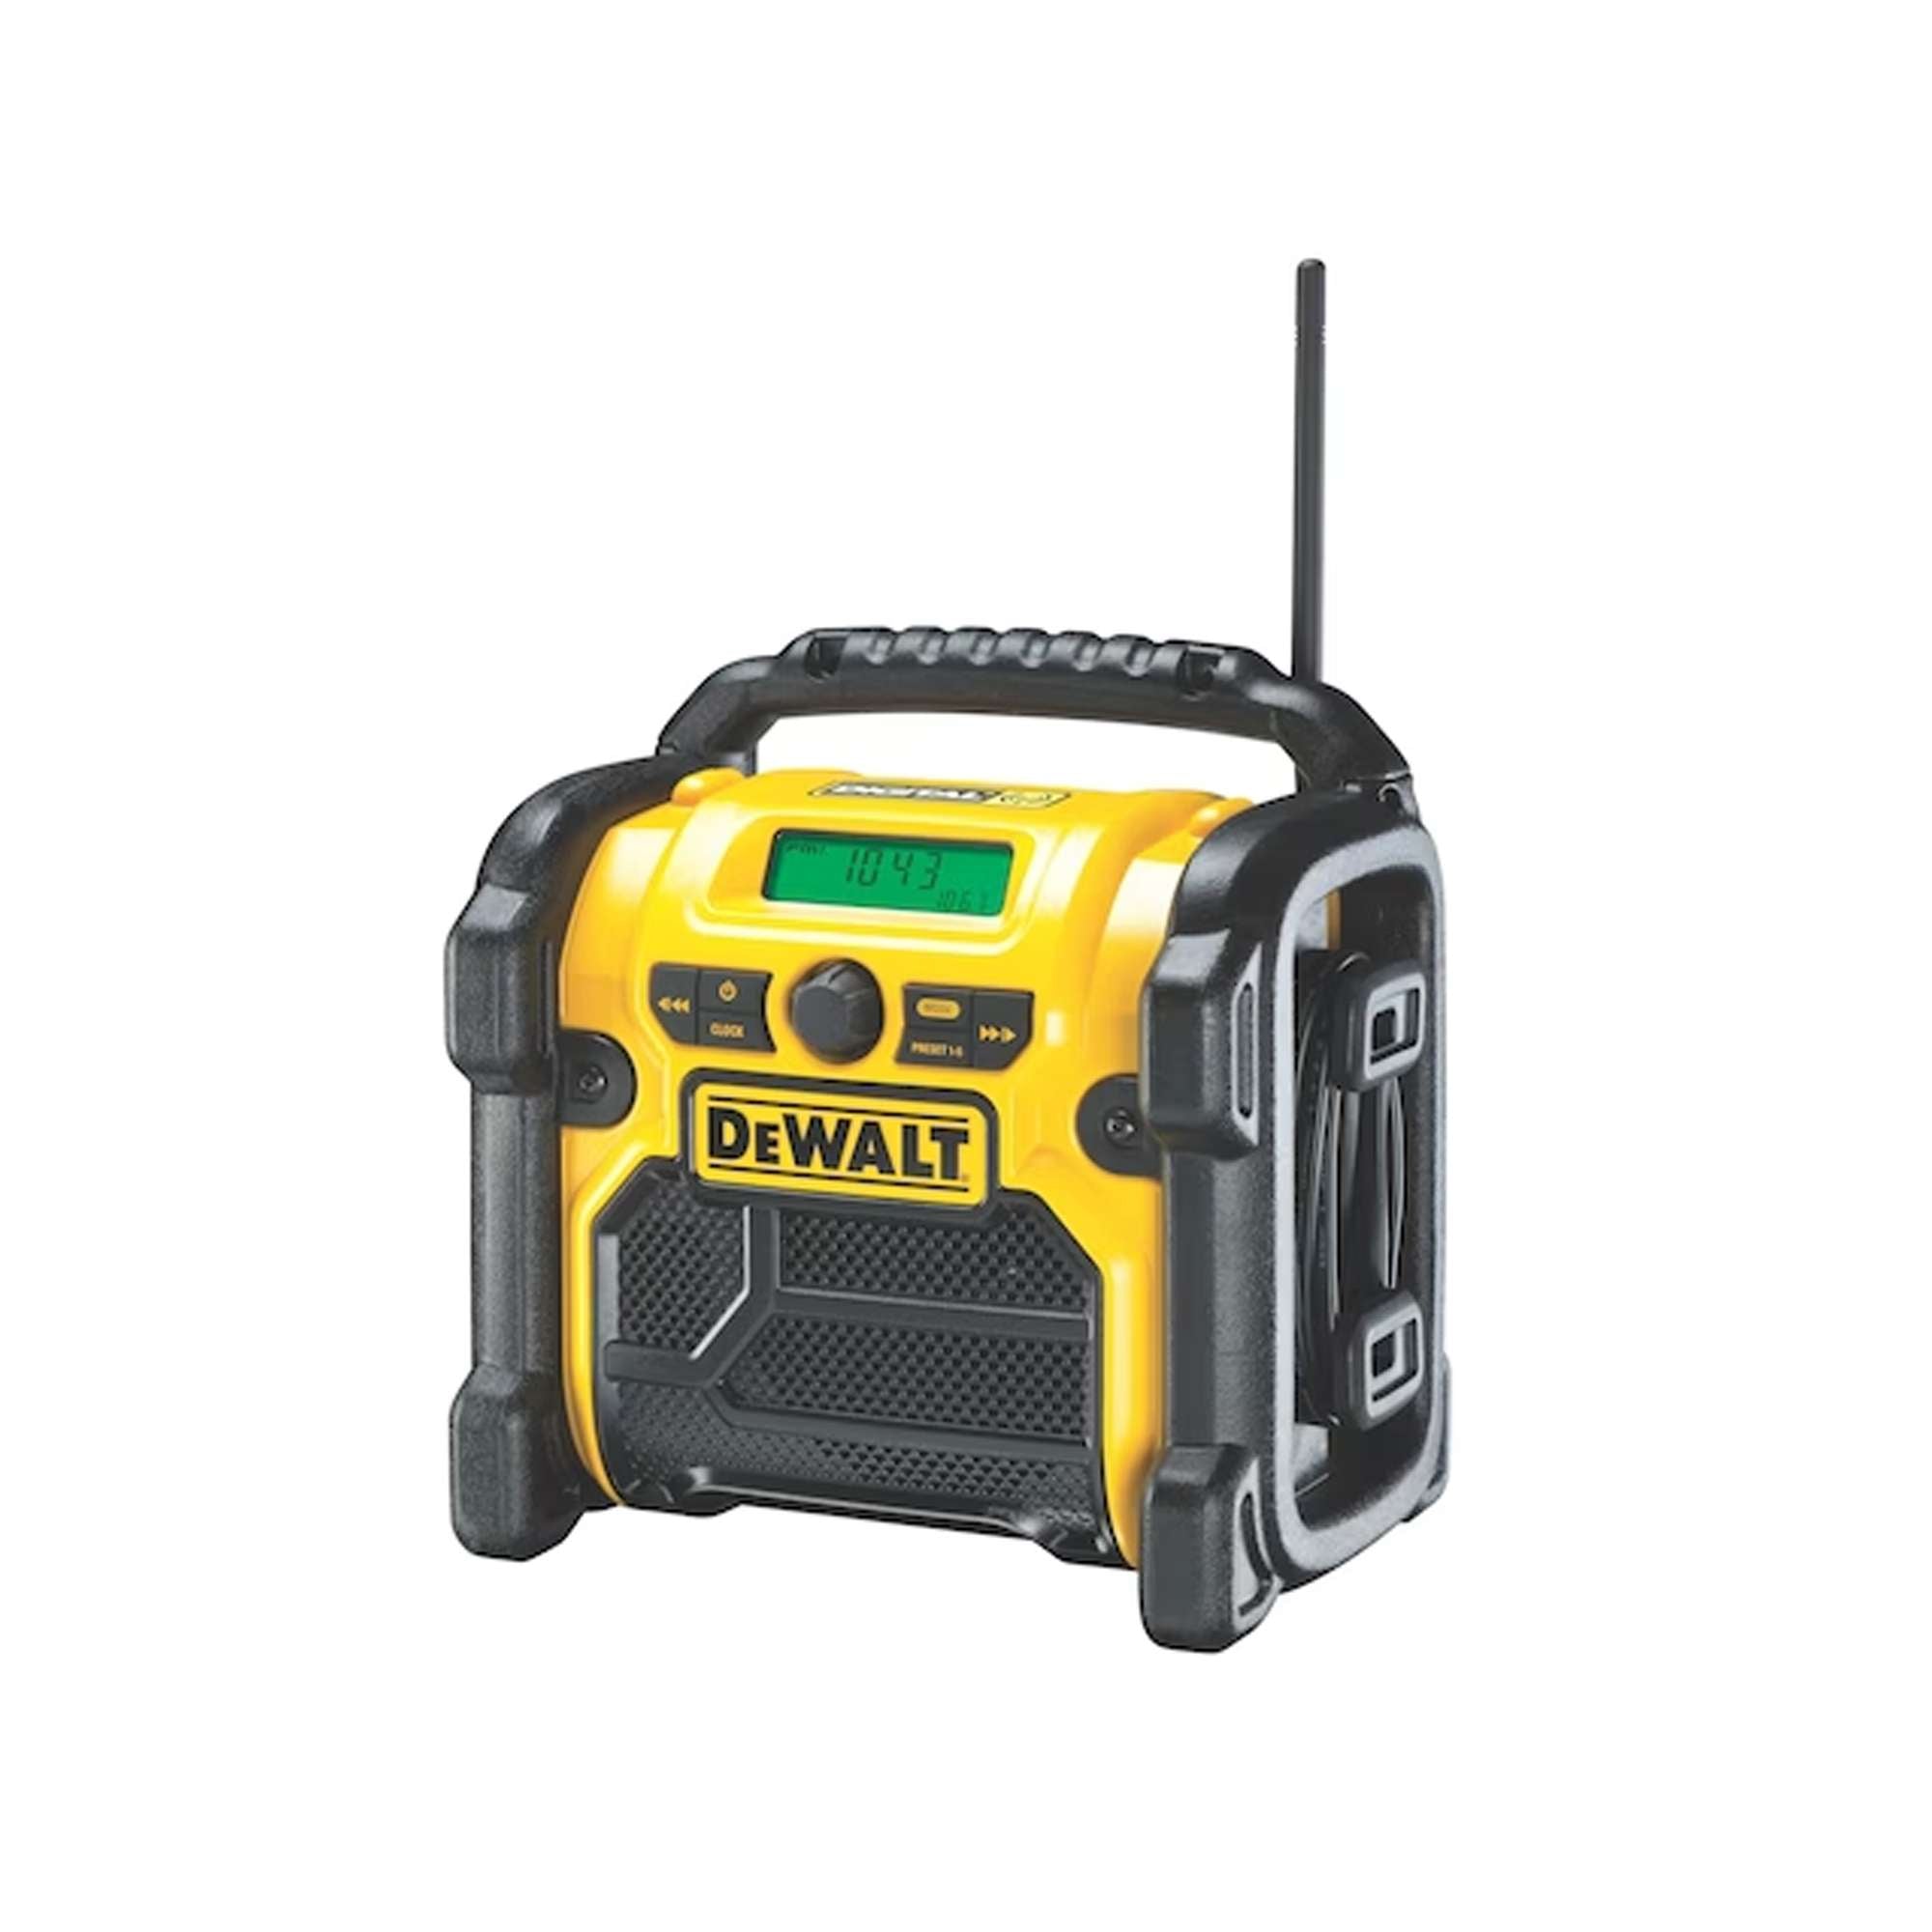 Radio/charger DEWALT dcr020-qw